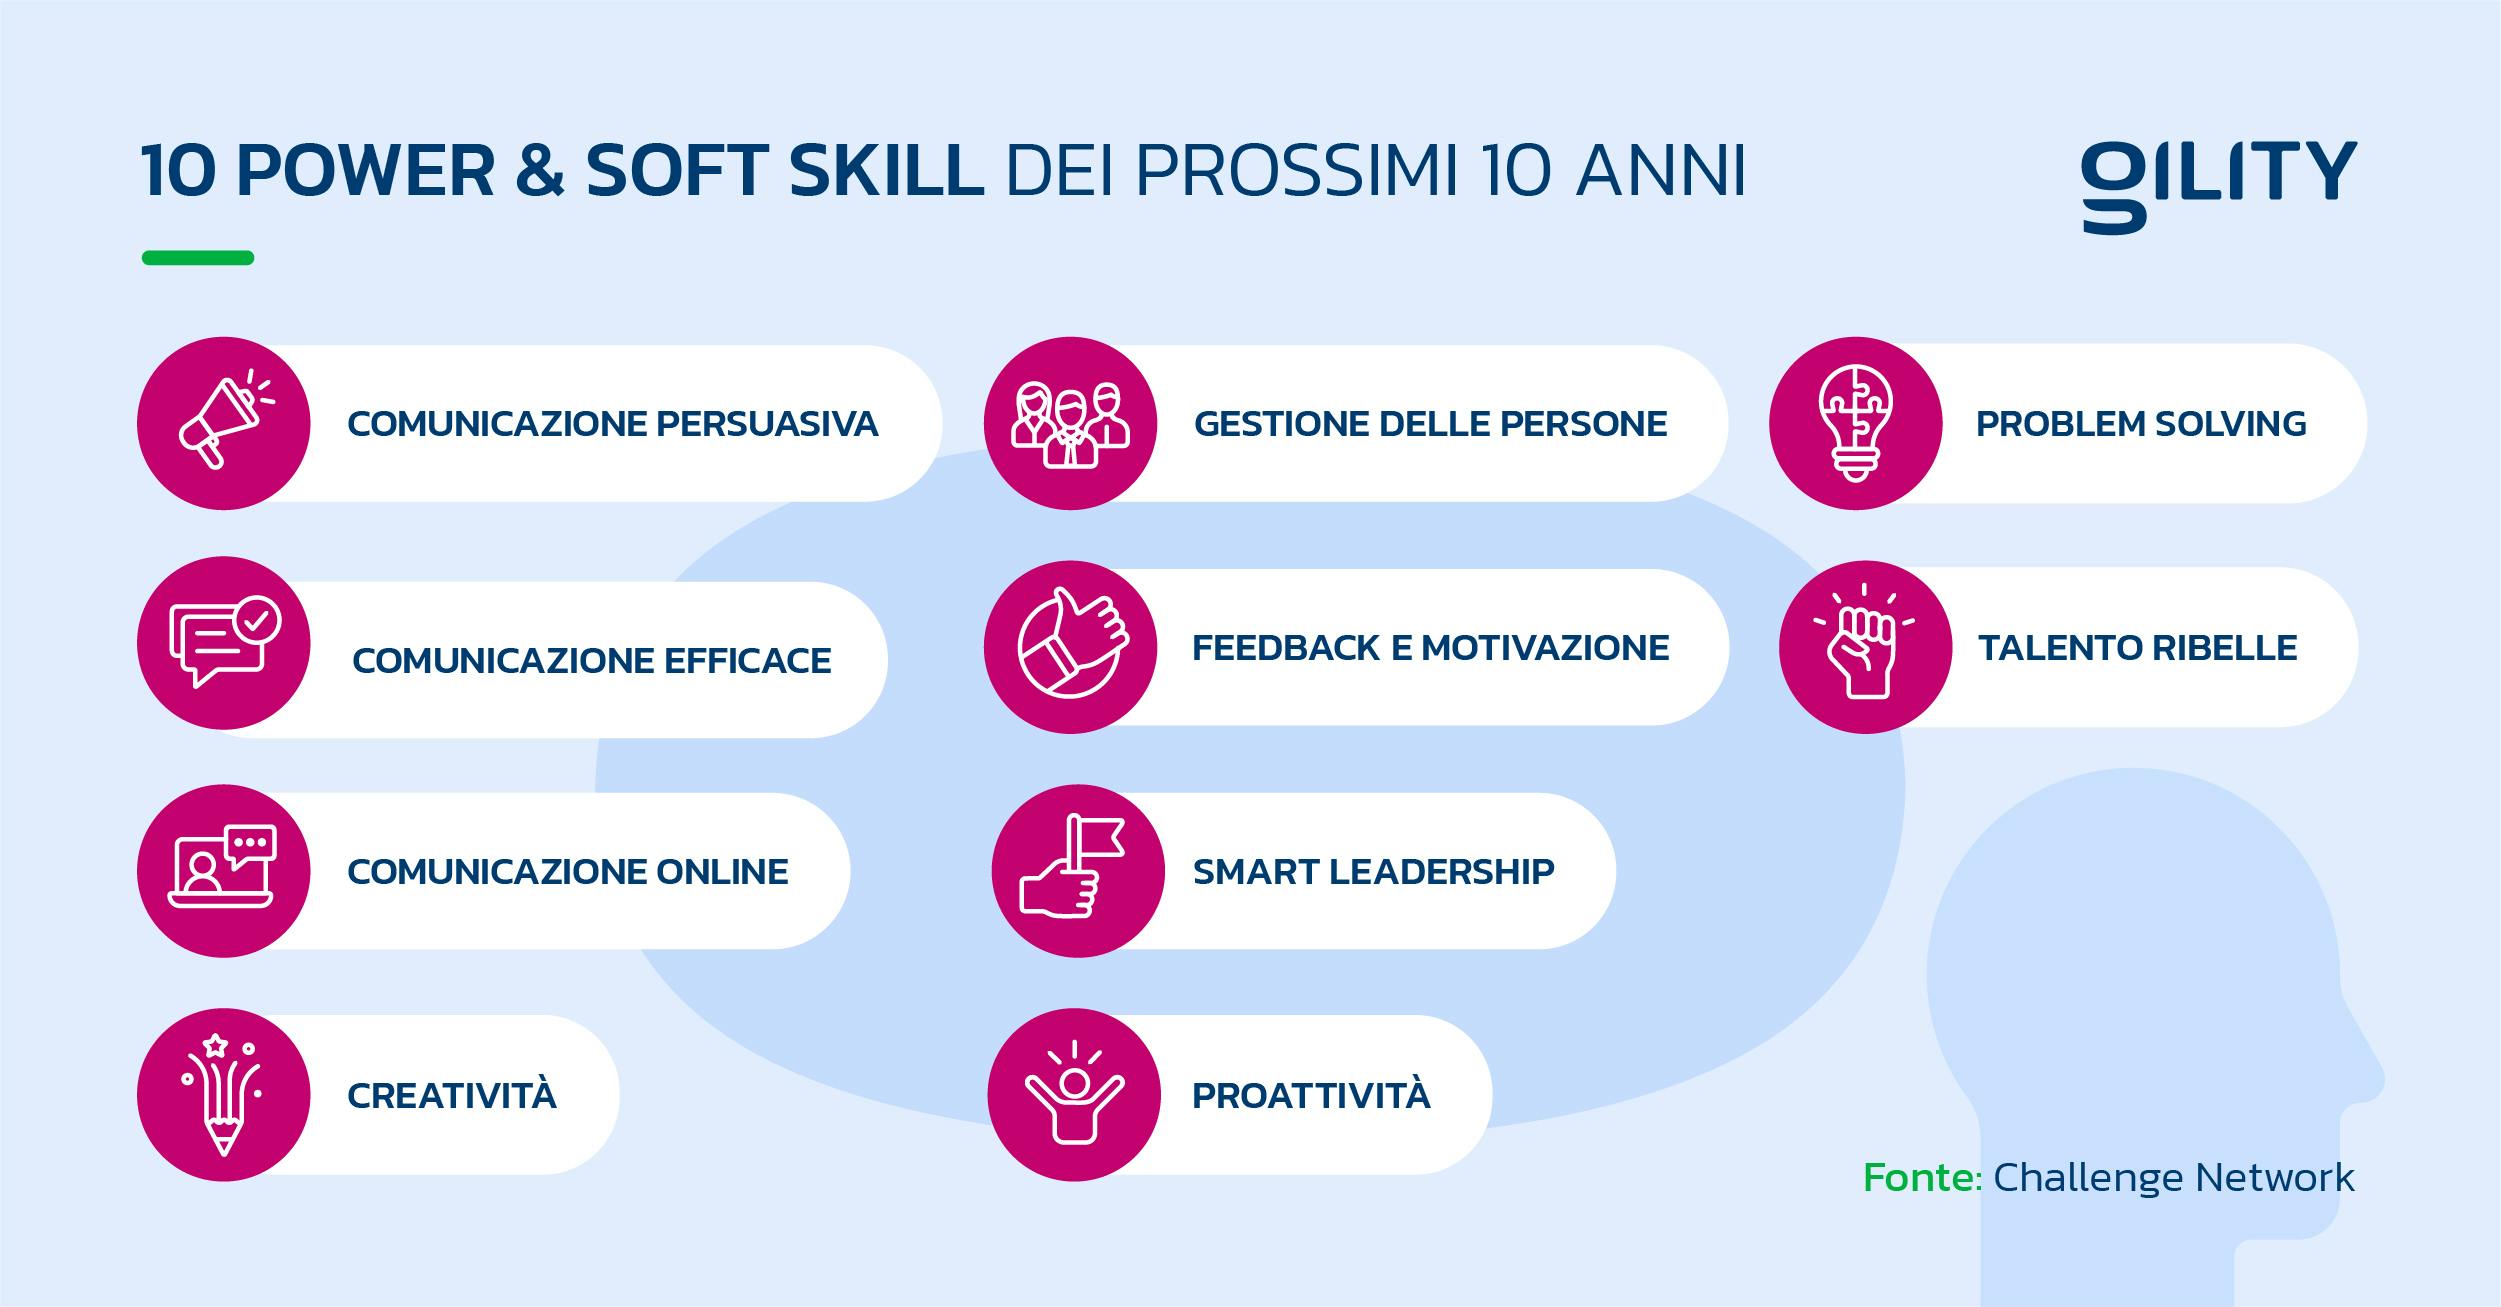 Elenco delle 10 power e soft skills fondamentali per i prossimi 10 anni secondo Challenge Network